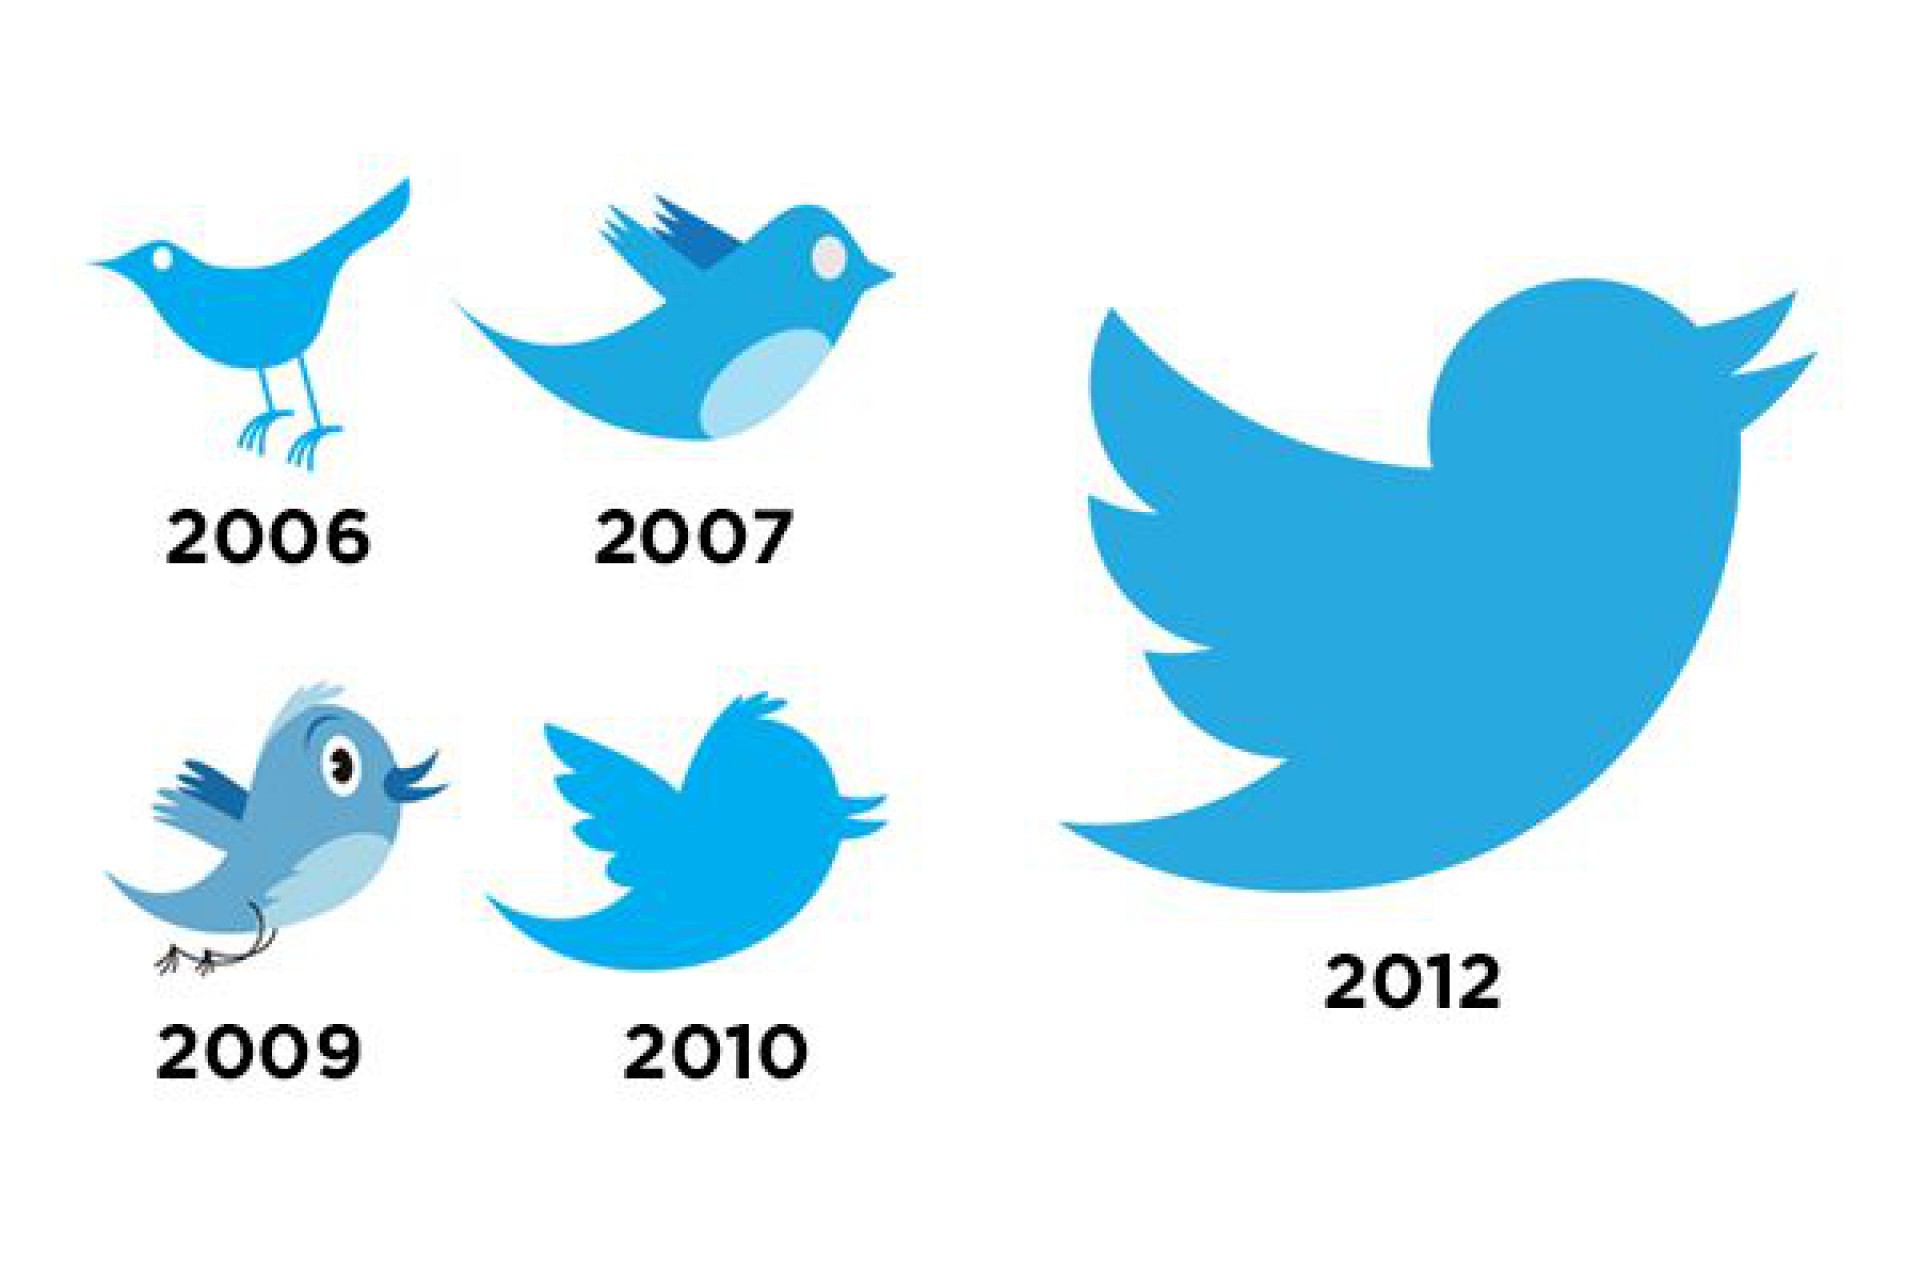 Logos do Twitter ao longo do tempo